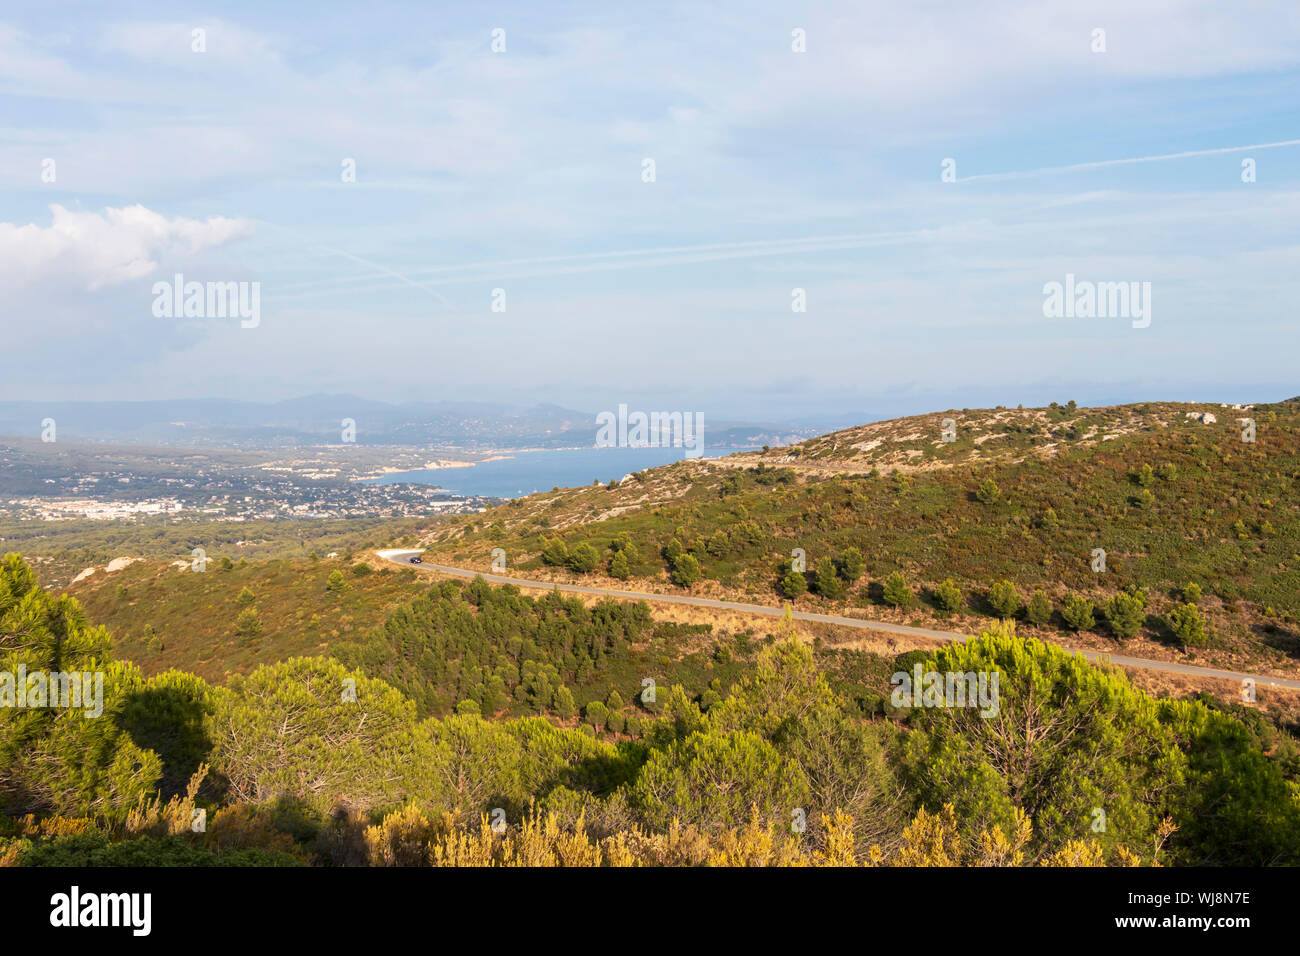 Panoramablick auf La Ciotat, Stadt an der Mittelmeerküste im Süden von Frankreich. Beliebtes Urlaubsziel an der Côte d'Azur, Europa Stockfoto